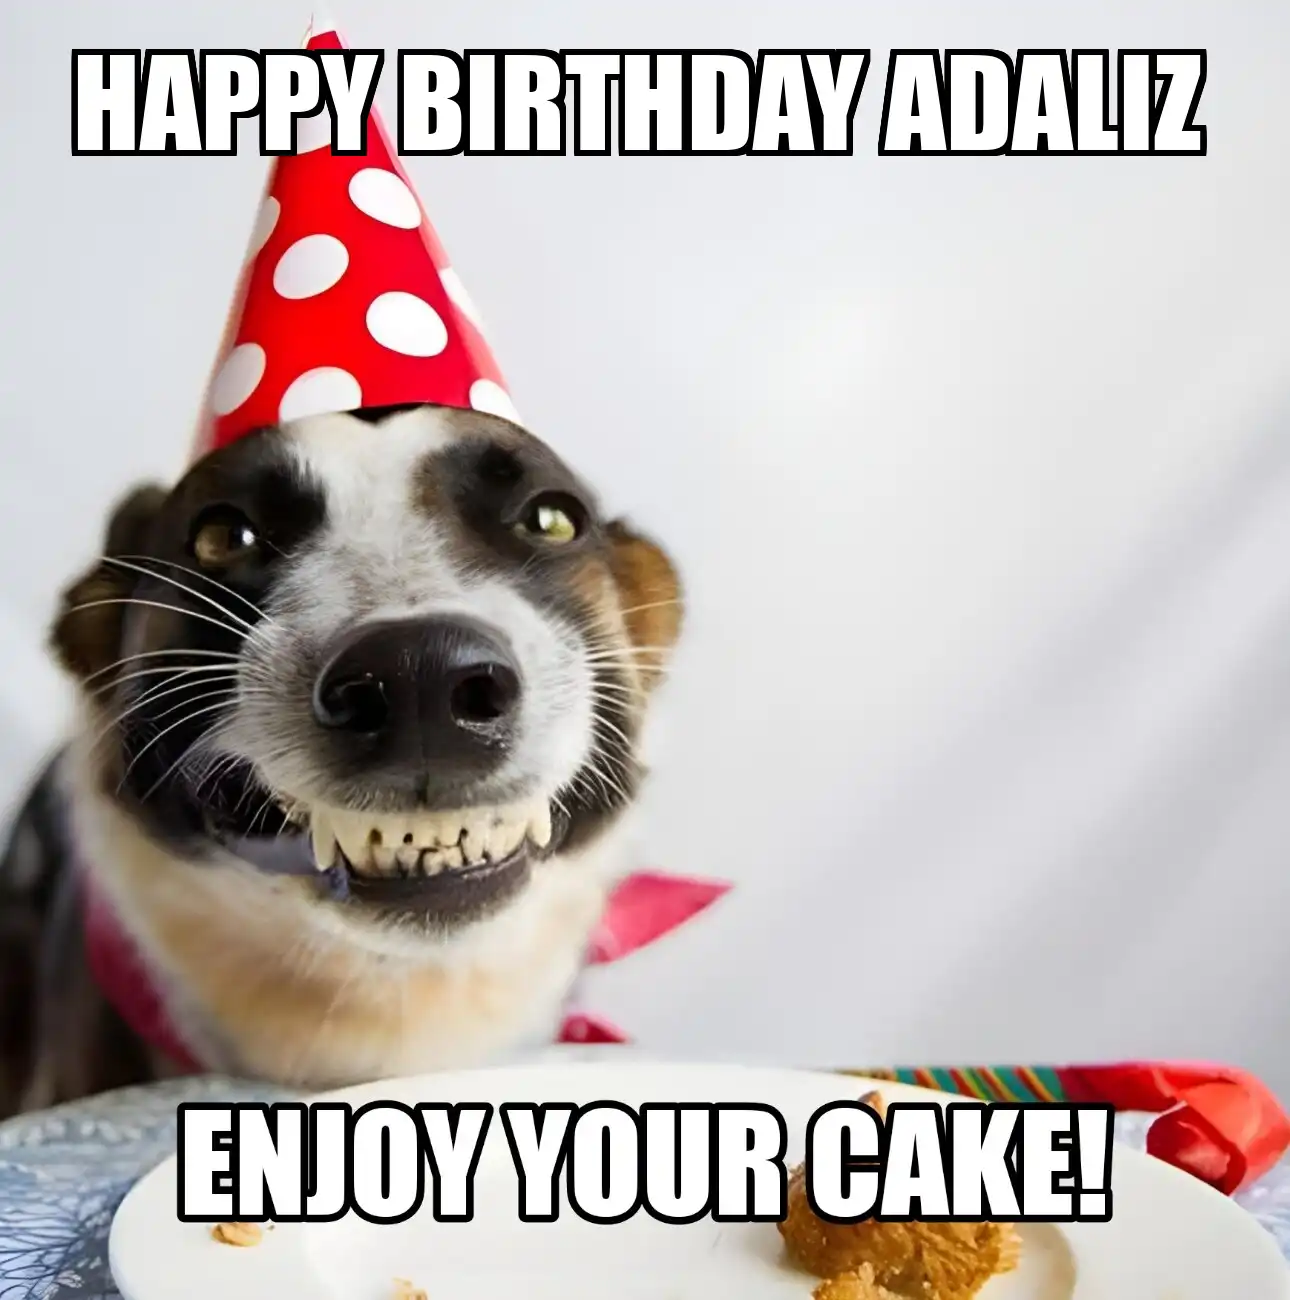 Happy Birthday Adaliz Enjoy Your Cake Dog Meme